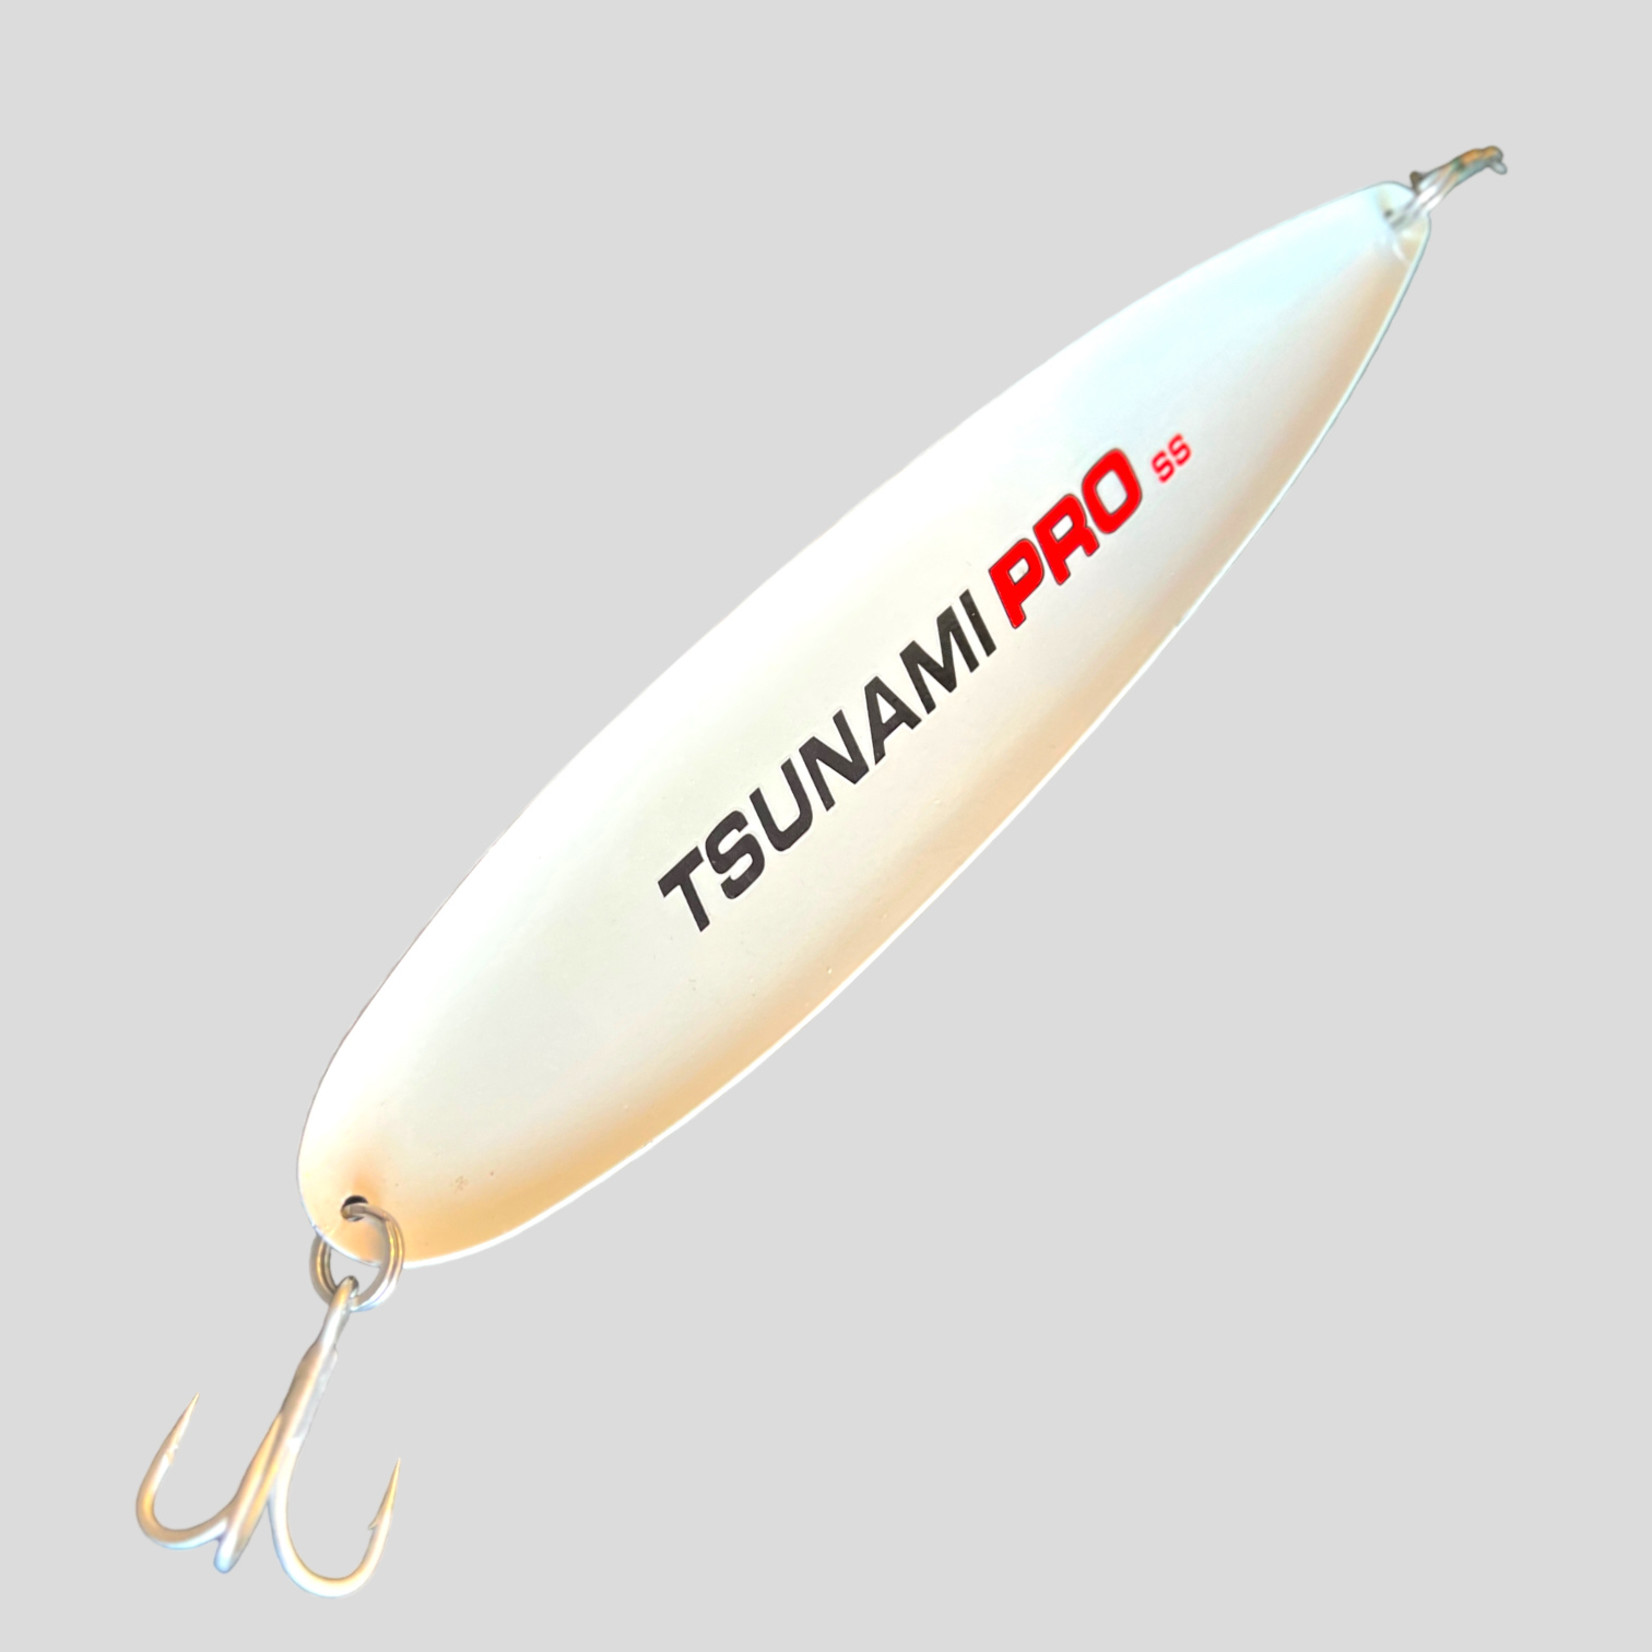 Tsunami Tsunami Pro Flutter Spoon